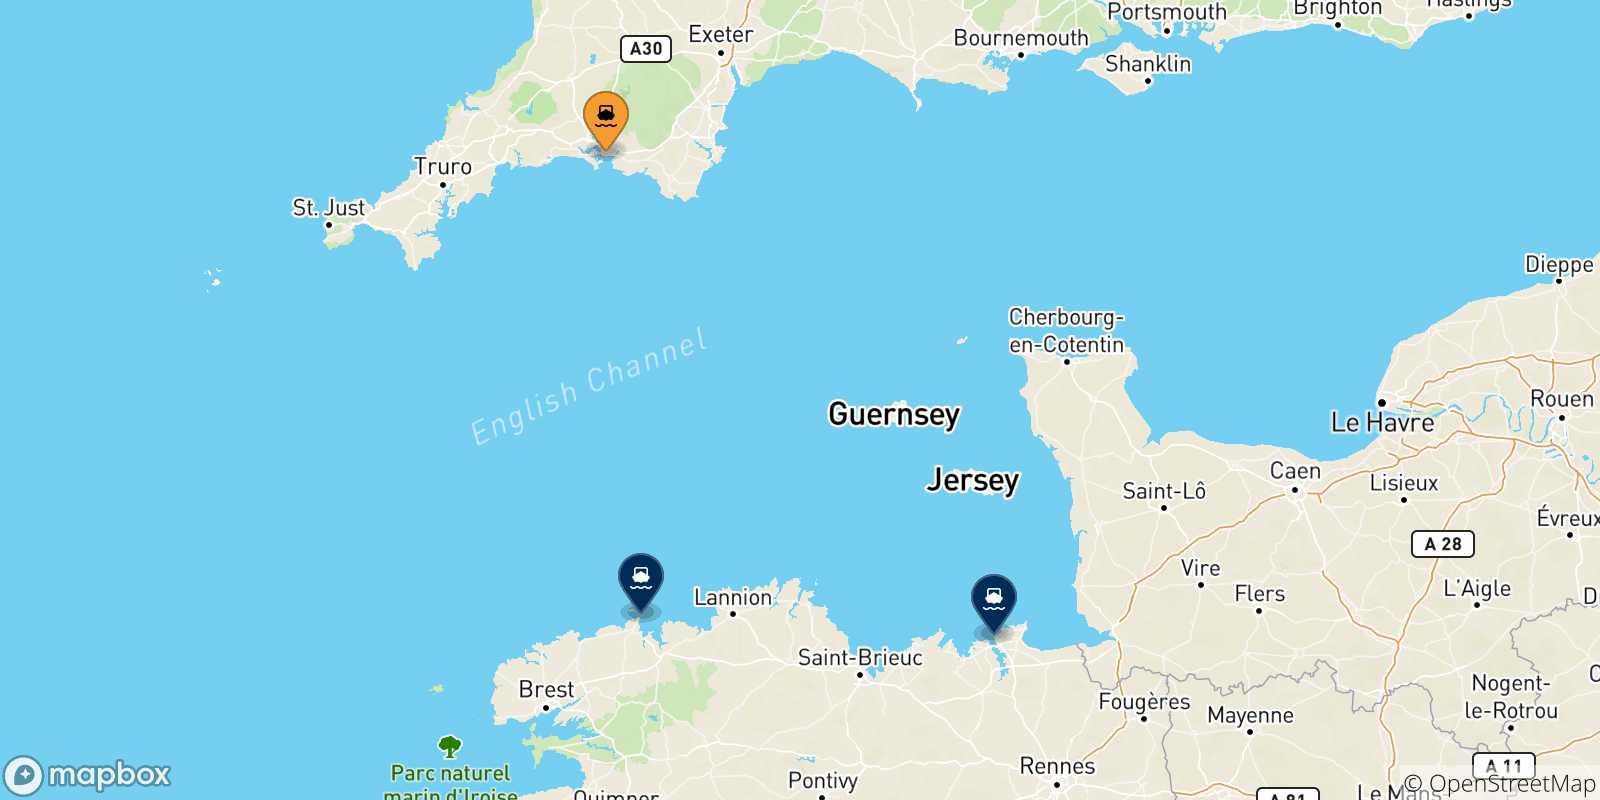 Mappa delle possibili rotte tra Plymouth e la Francia